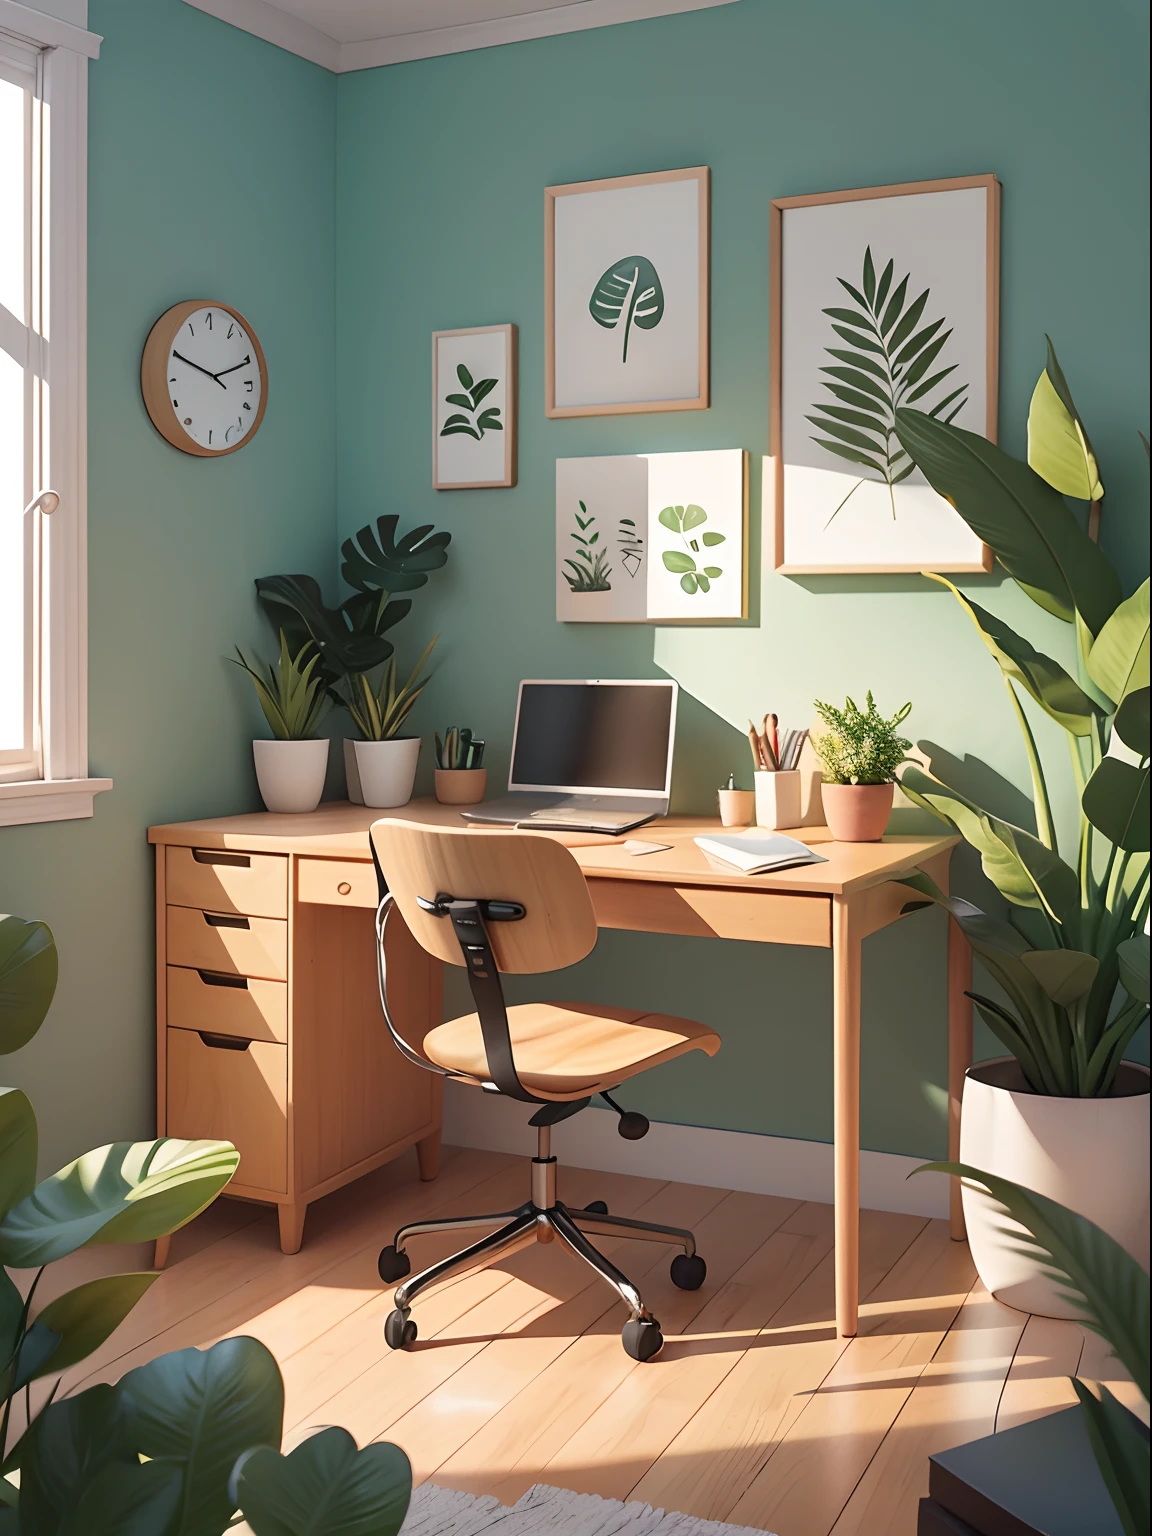 Büroillustration im Cartoon-Stil gezeichnet. Fügen Sie natürliche Elemente hinzu, Als Pflanzen und Blumen, Und verwenden Sie eine sanfte Farbpalette, um eine entspannende Atmosphäre zu schaffen.